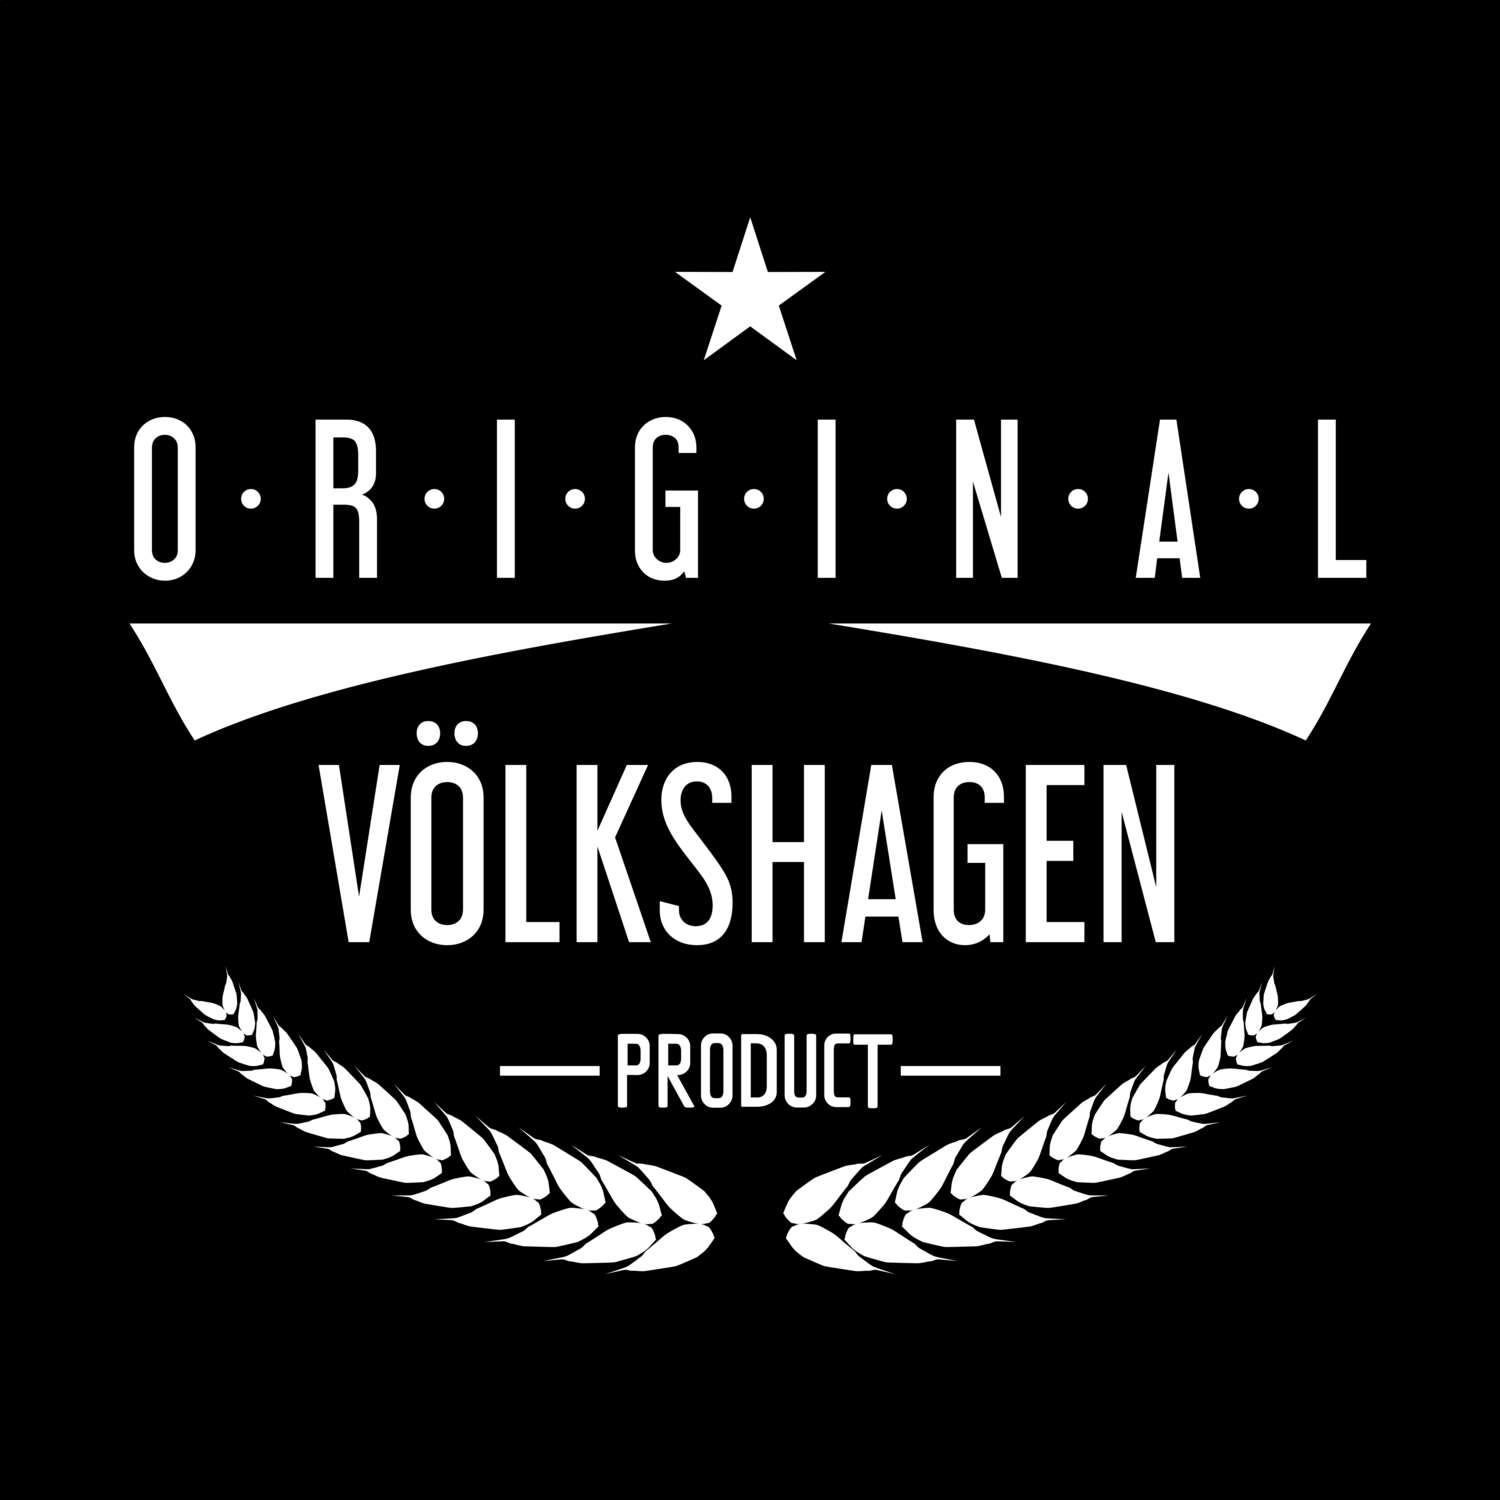 Völkshagen T-Shirt »Original Product«